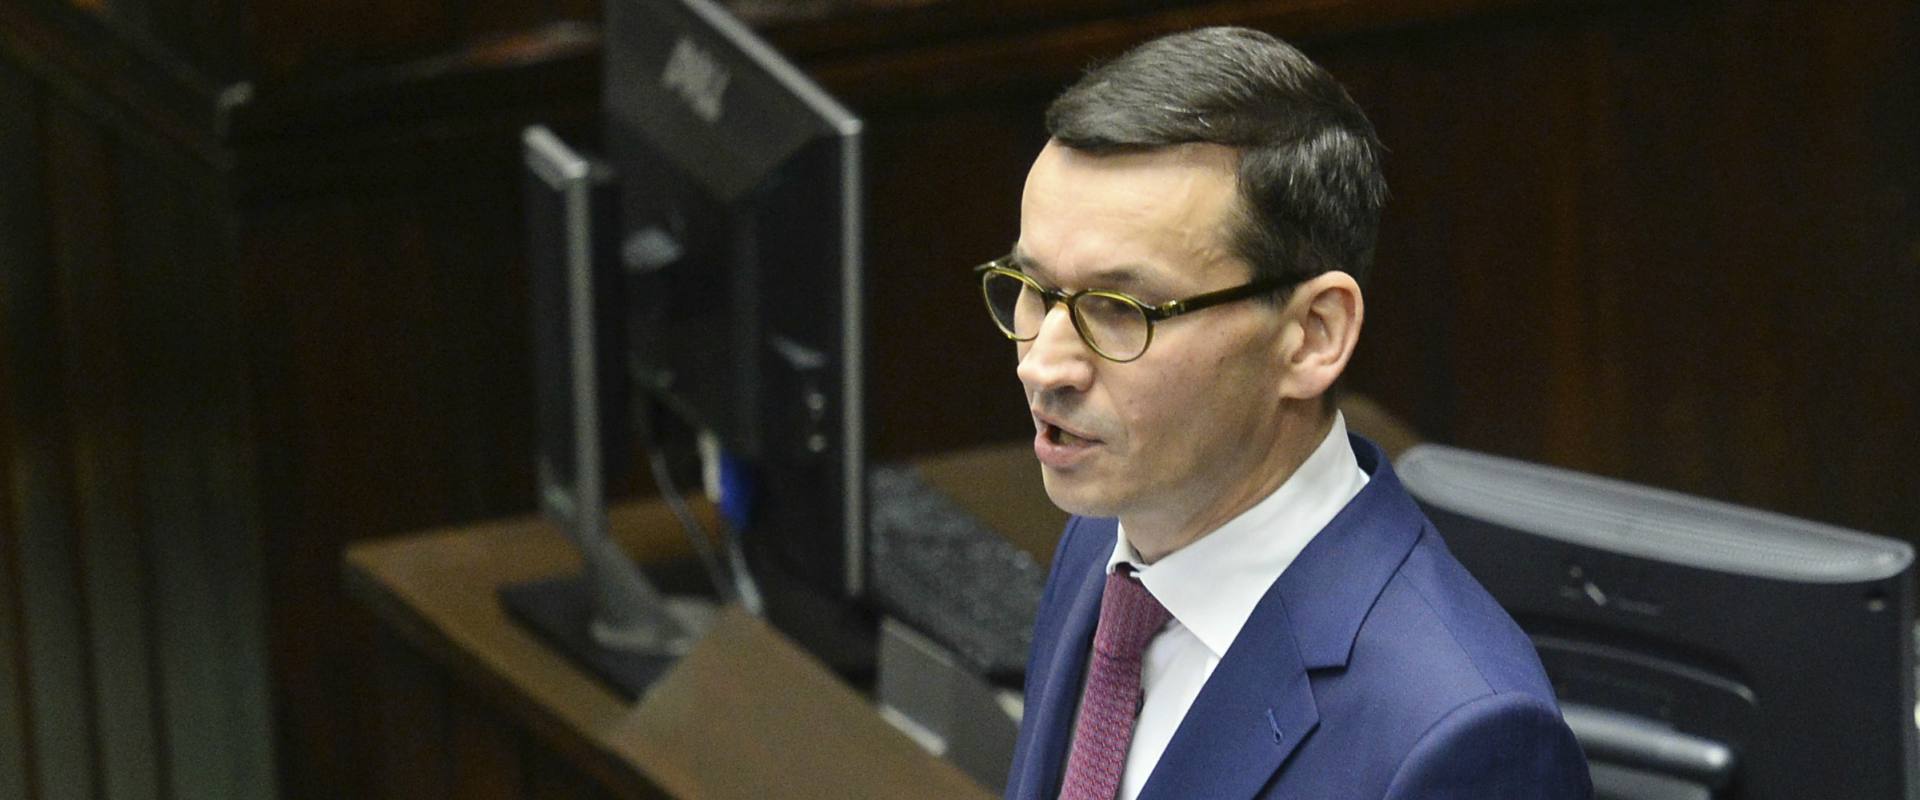 ראש ממשלת פולין מתאוש מורביצקי